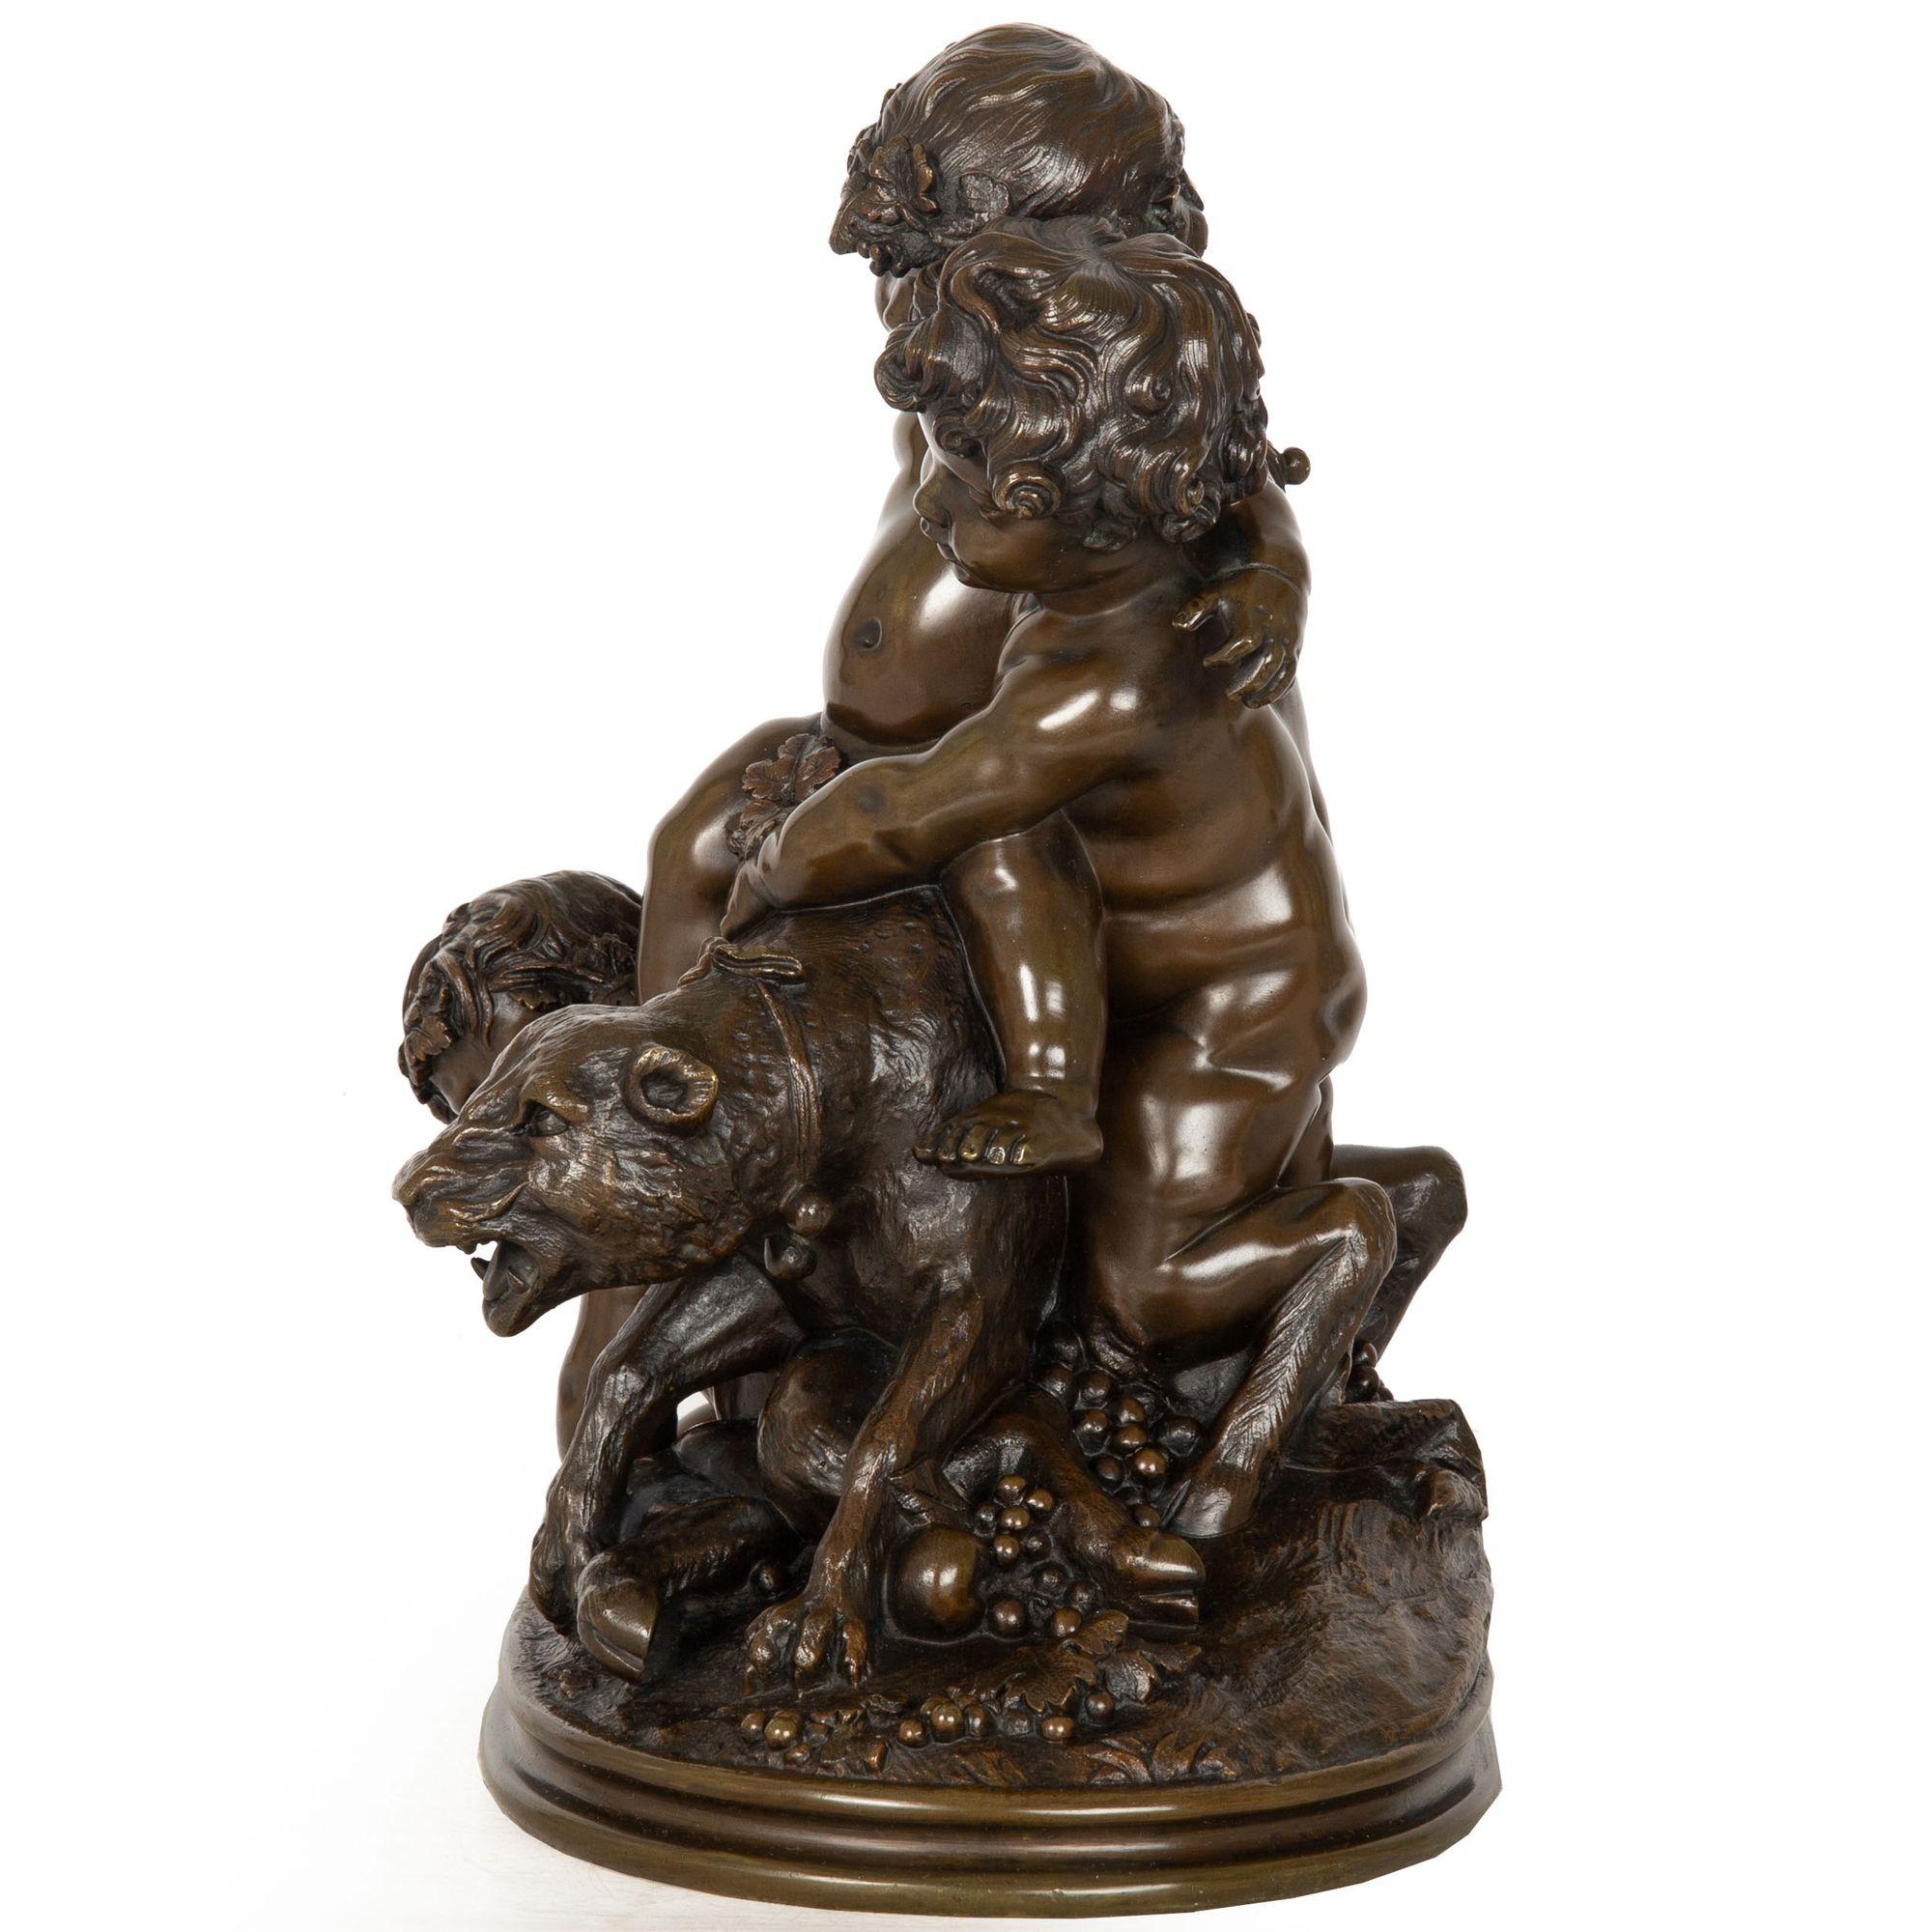 CLAUDE MICHEL, genannt CLODION [nach]
Französisch, 1738-1814

Eine Bacchanalien-Gruppe von Putto mit einer Wildkatze

Sandgegossene patinierte Bronze  im Sockel signiert 